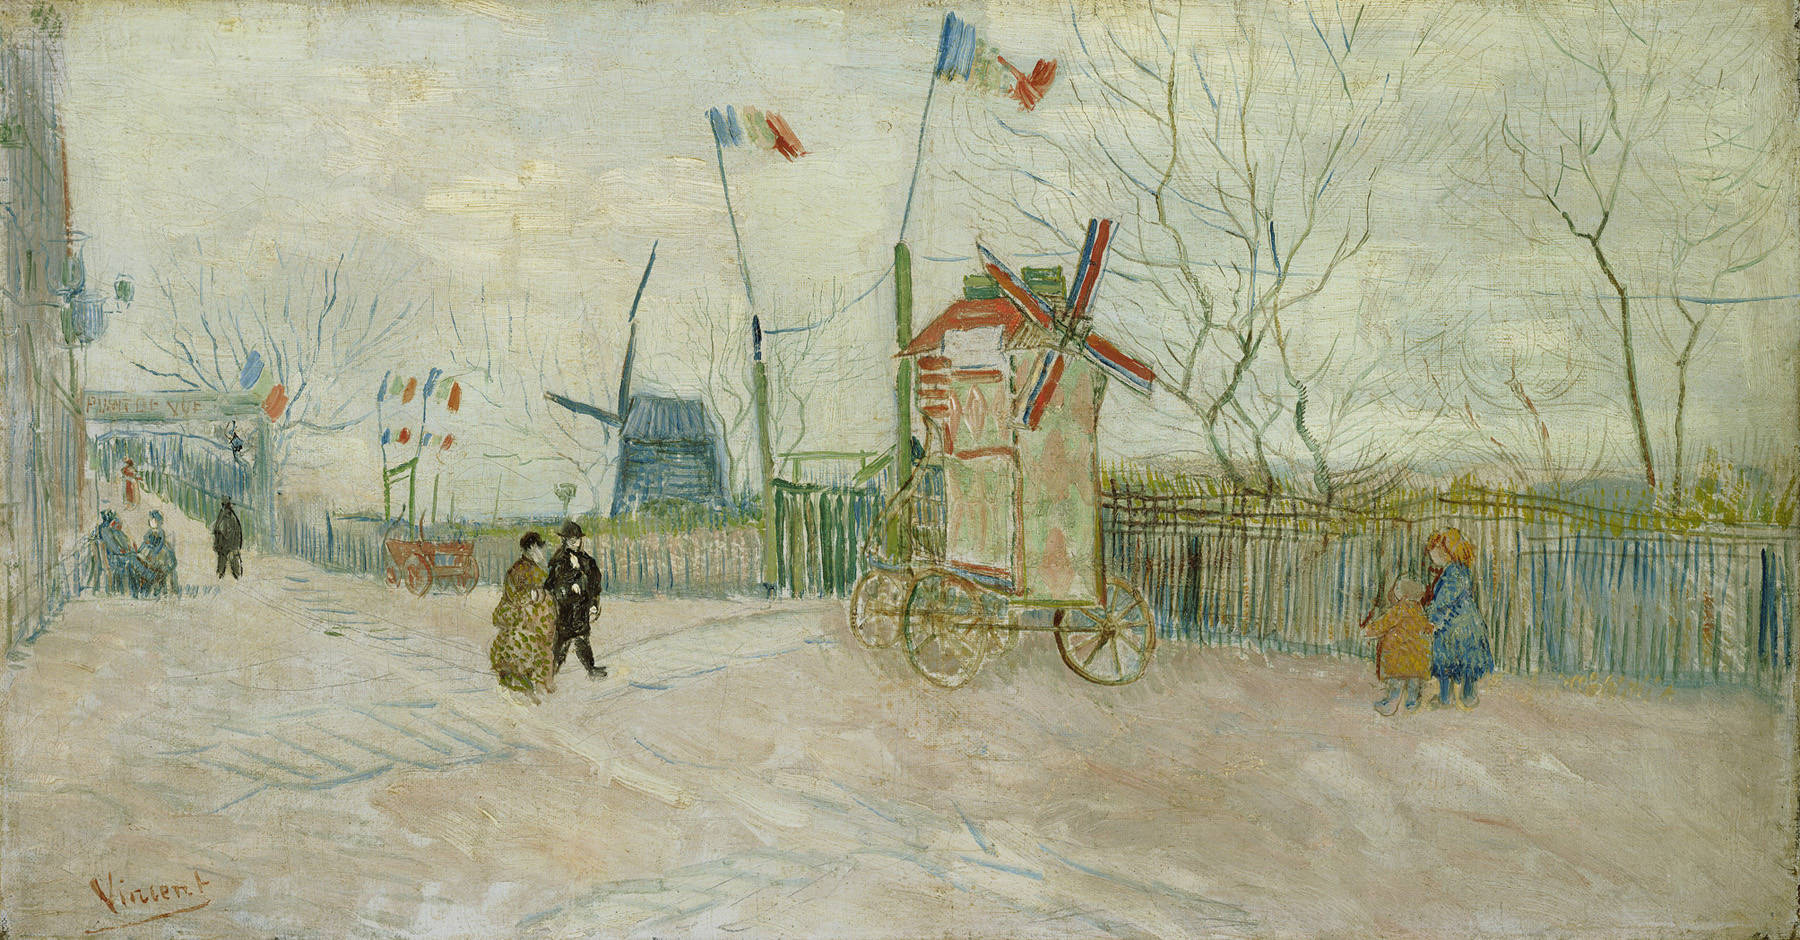 Straßenszene in Montmarte - Le Moulin de Poivre by Vincent van Gogh - 1887 - 34.5 x 64.5 cm Van Gogh Museum